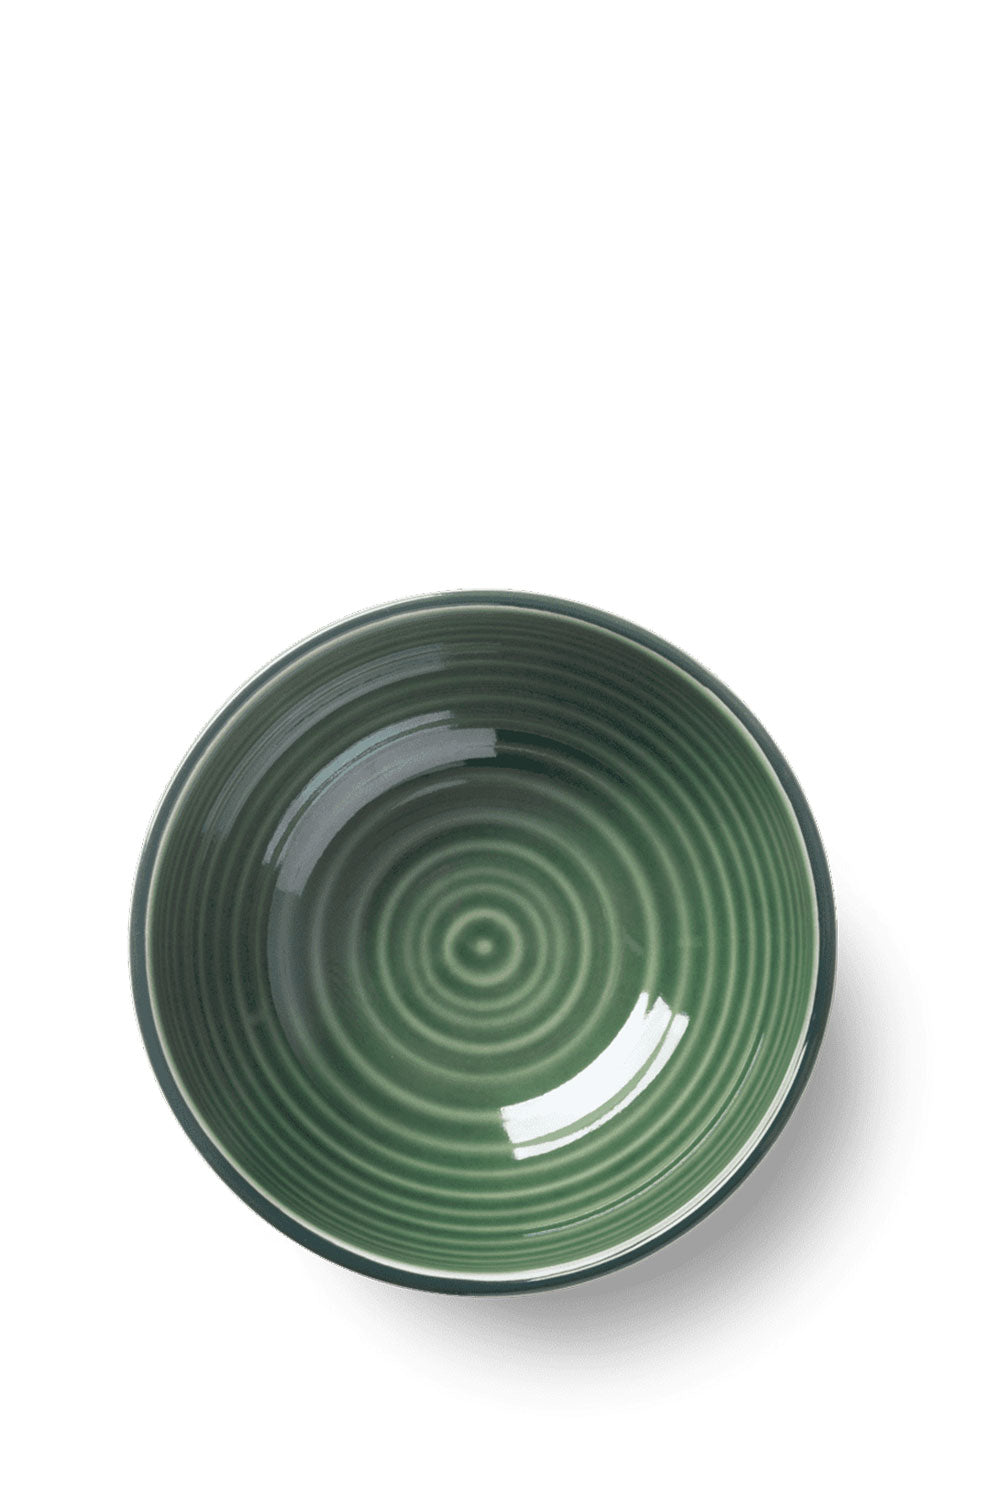 Colore Bowl, 15 cm - Maison7